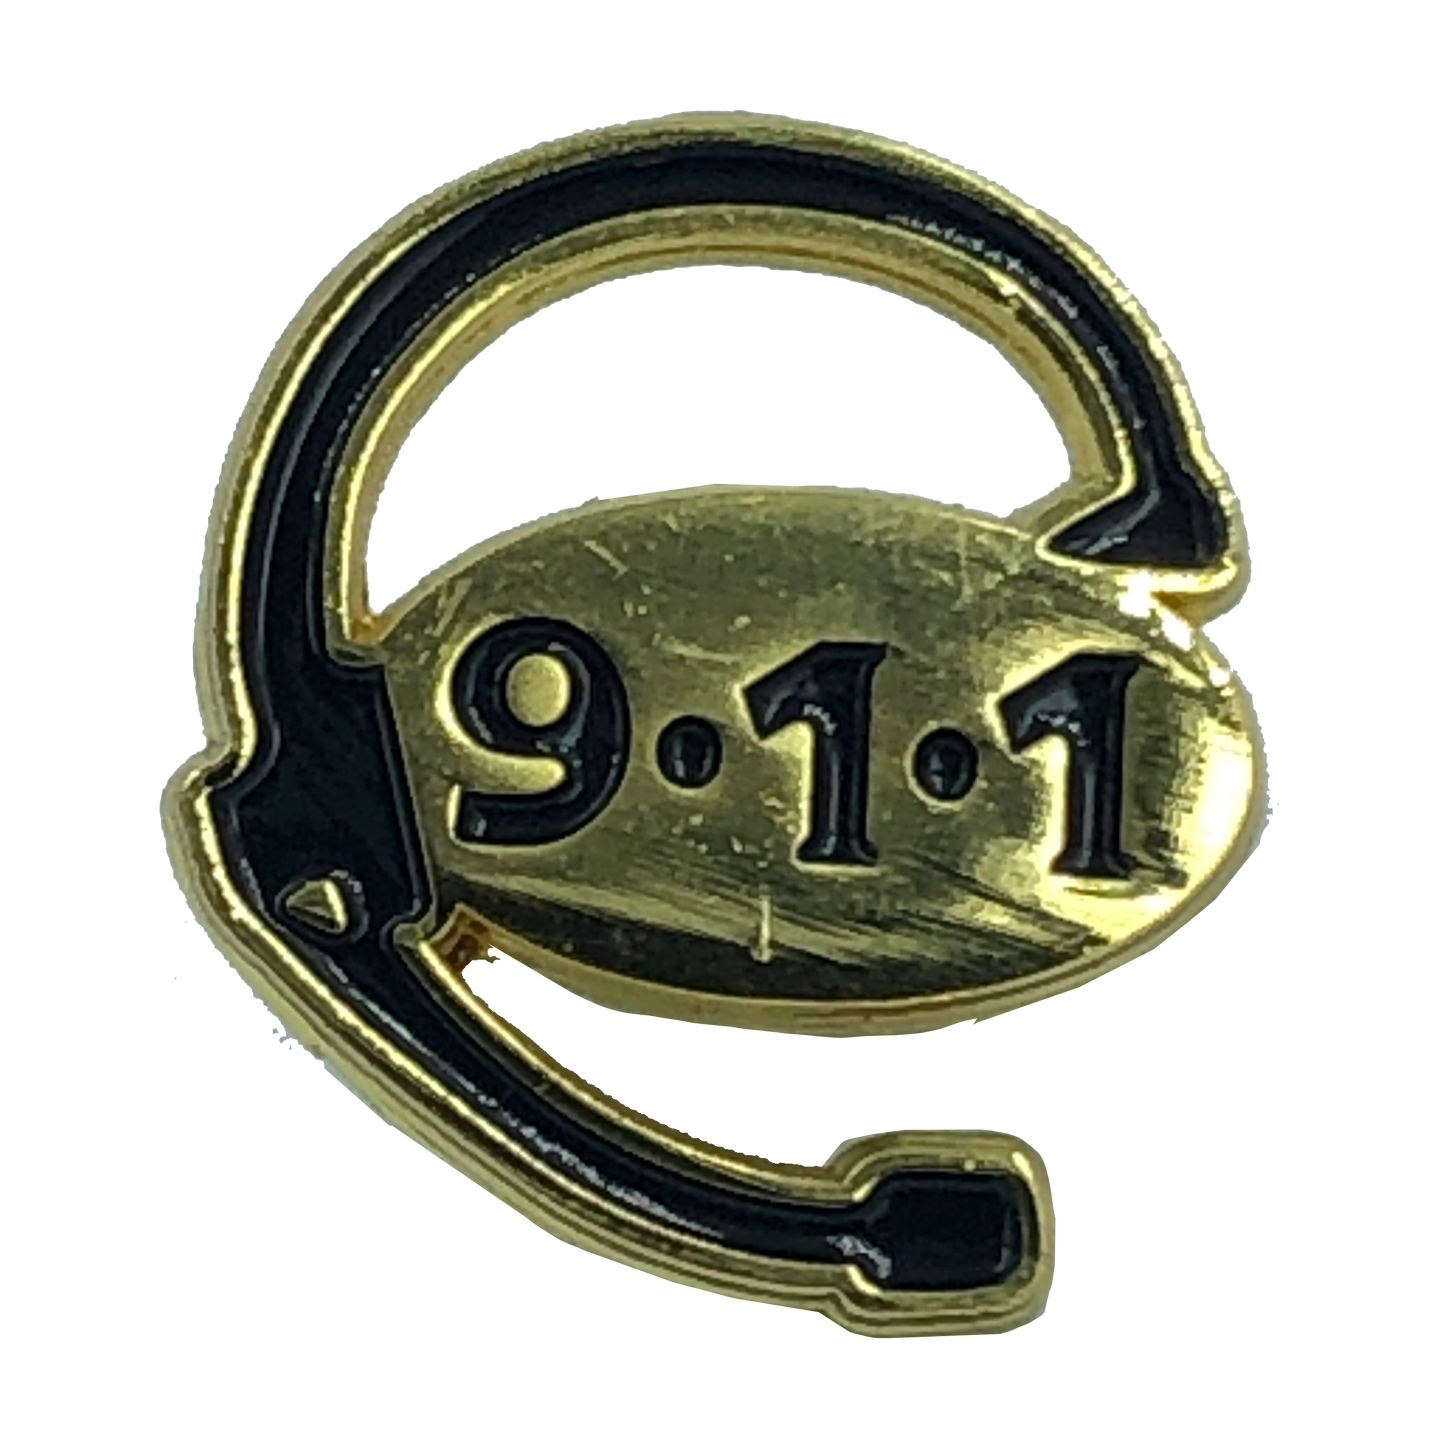 L-24 911 Dispatcher pin